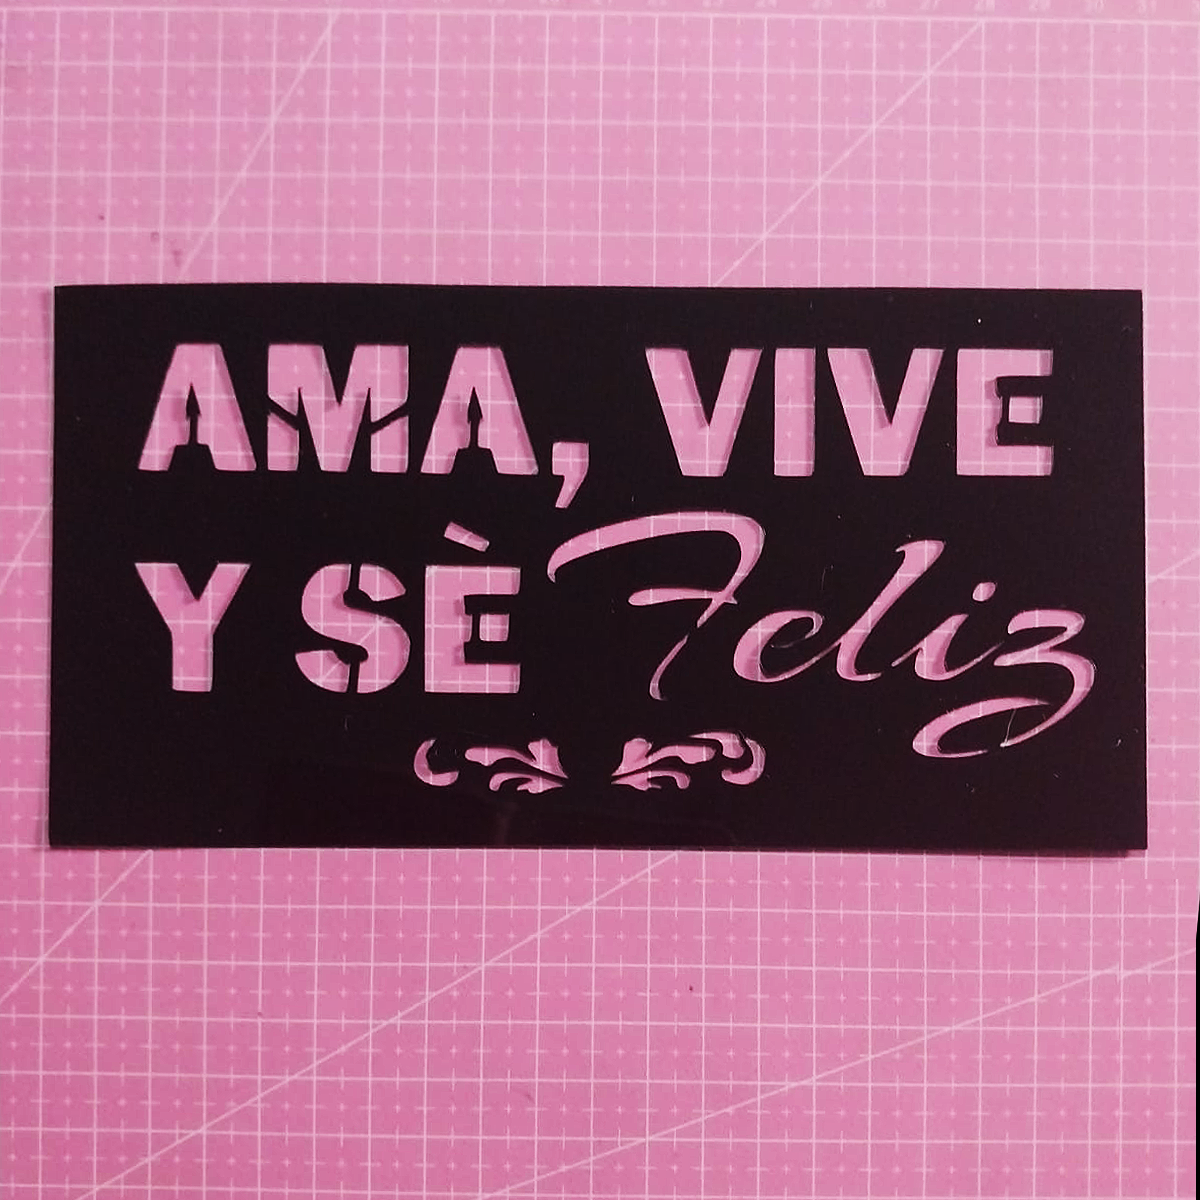 Stencil texto "Ama, vive y sé feliz" 20x10 cms (S154)